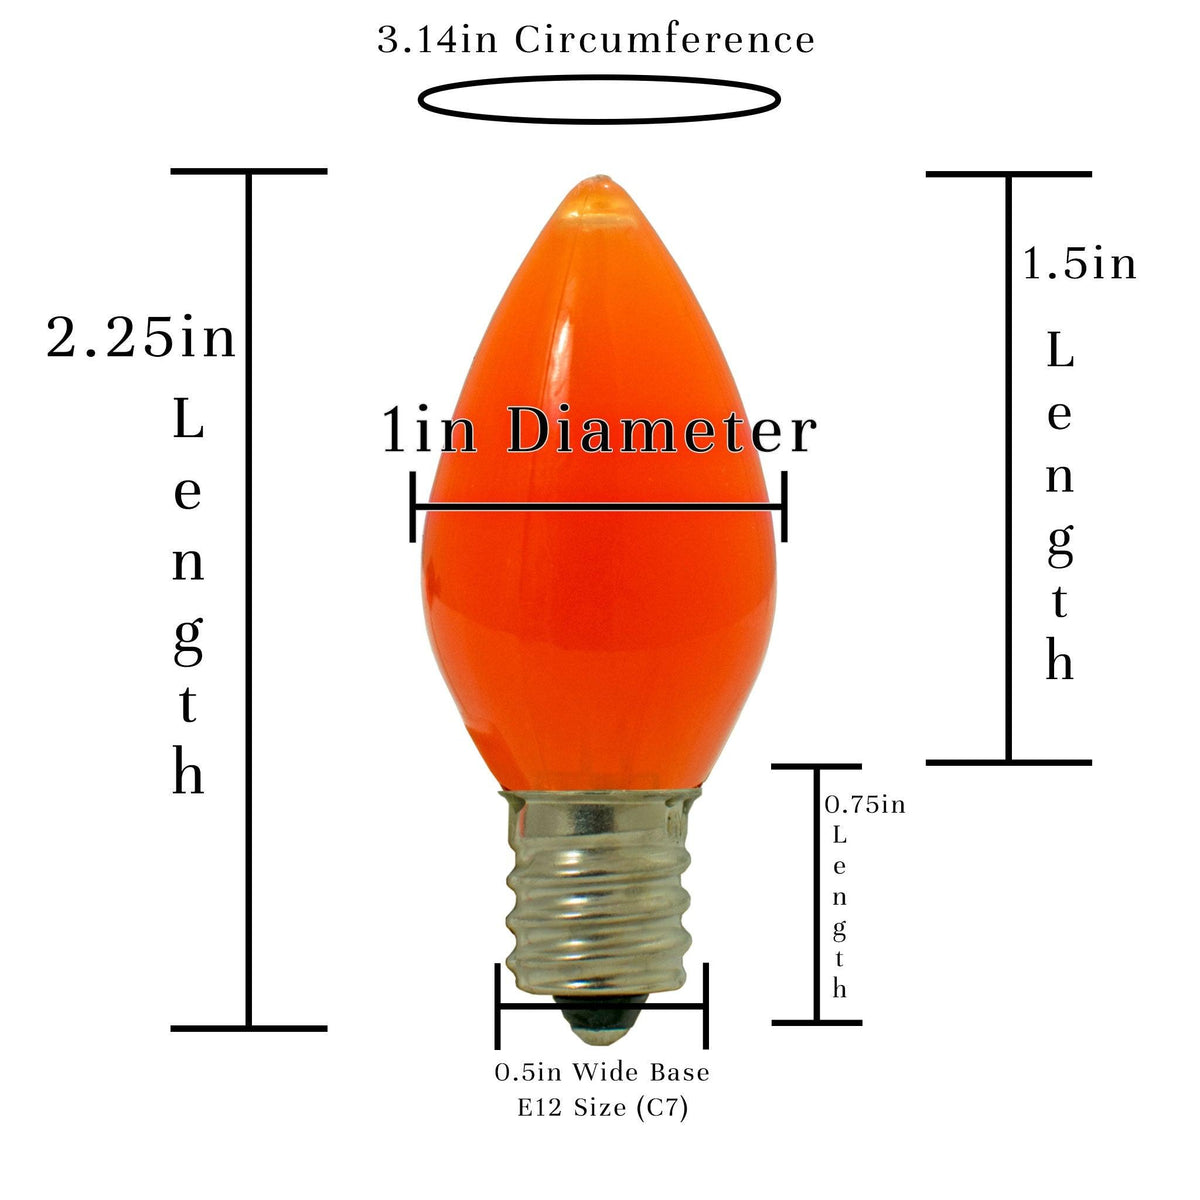 Orange Solid LED Light Bulbs - Lee Display